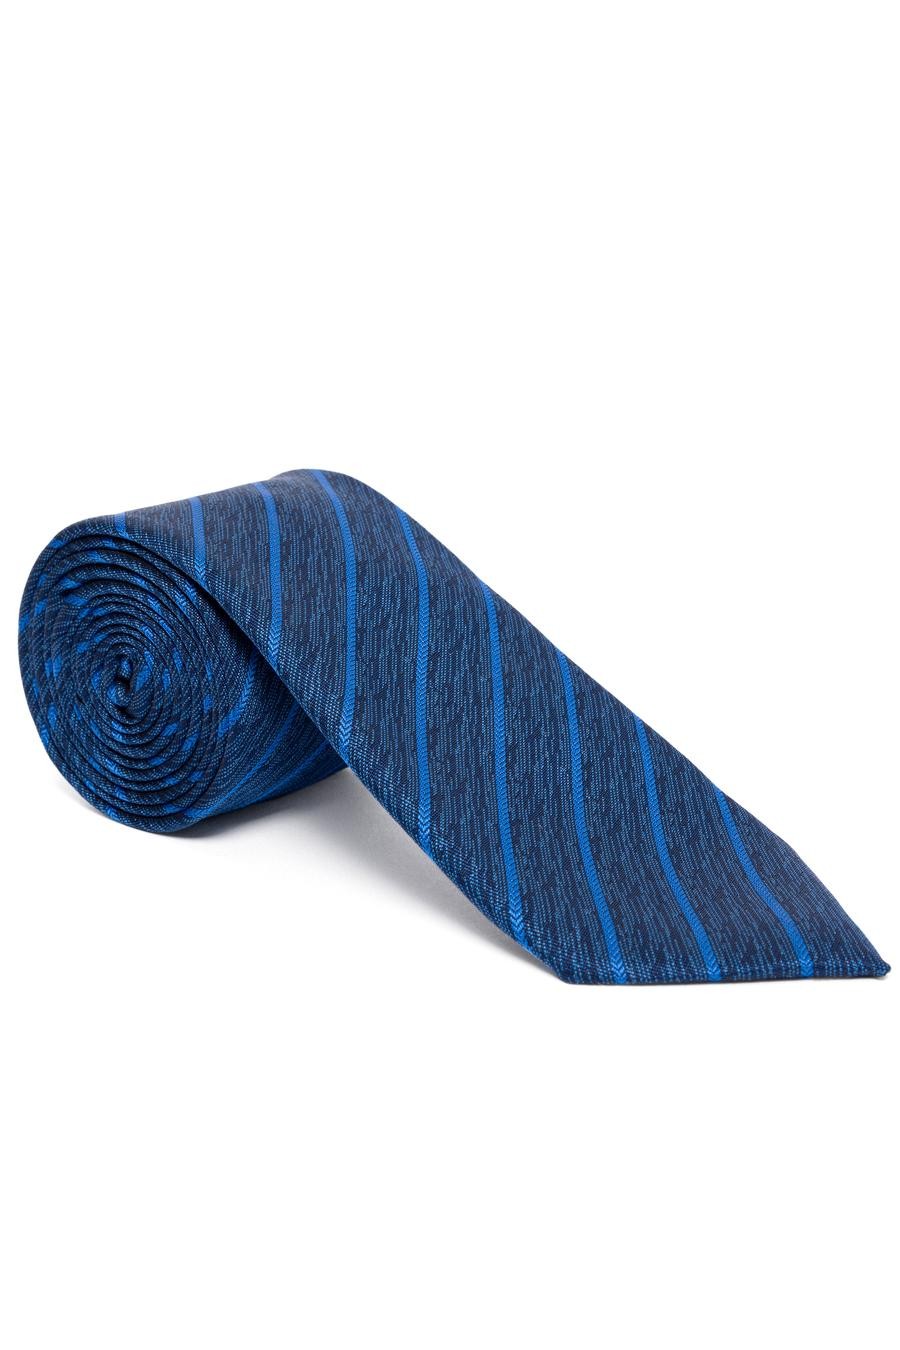 ست دستمال کراوات  آبی  استاندارد  مردانه  پیرکاردین